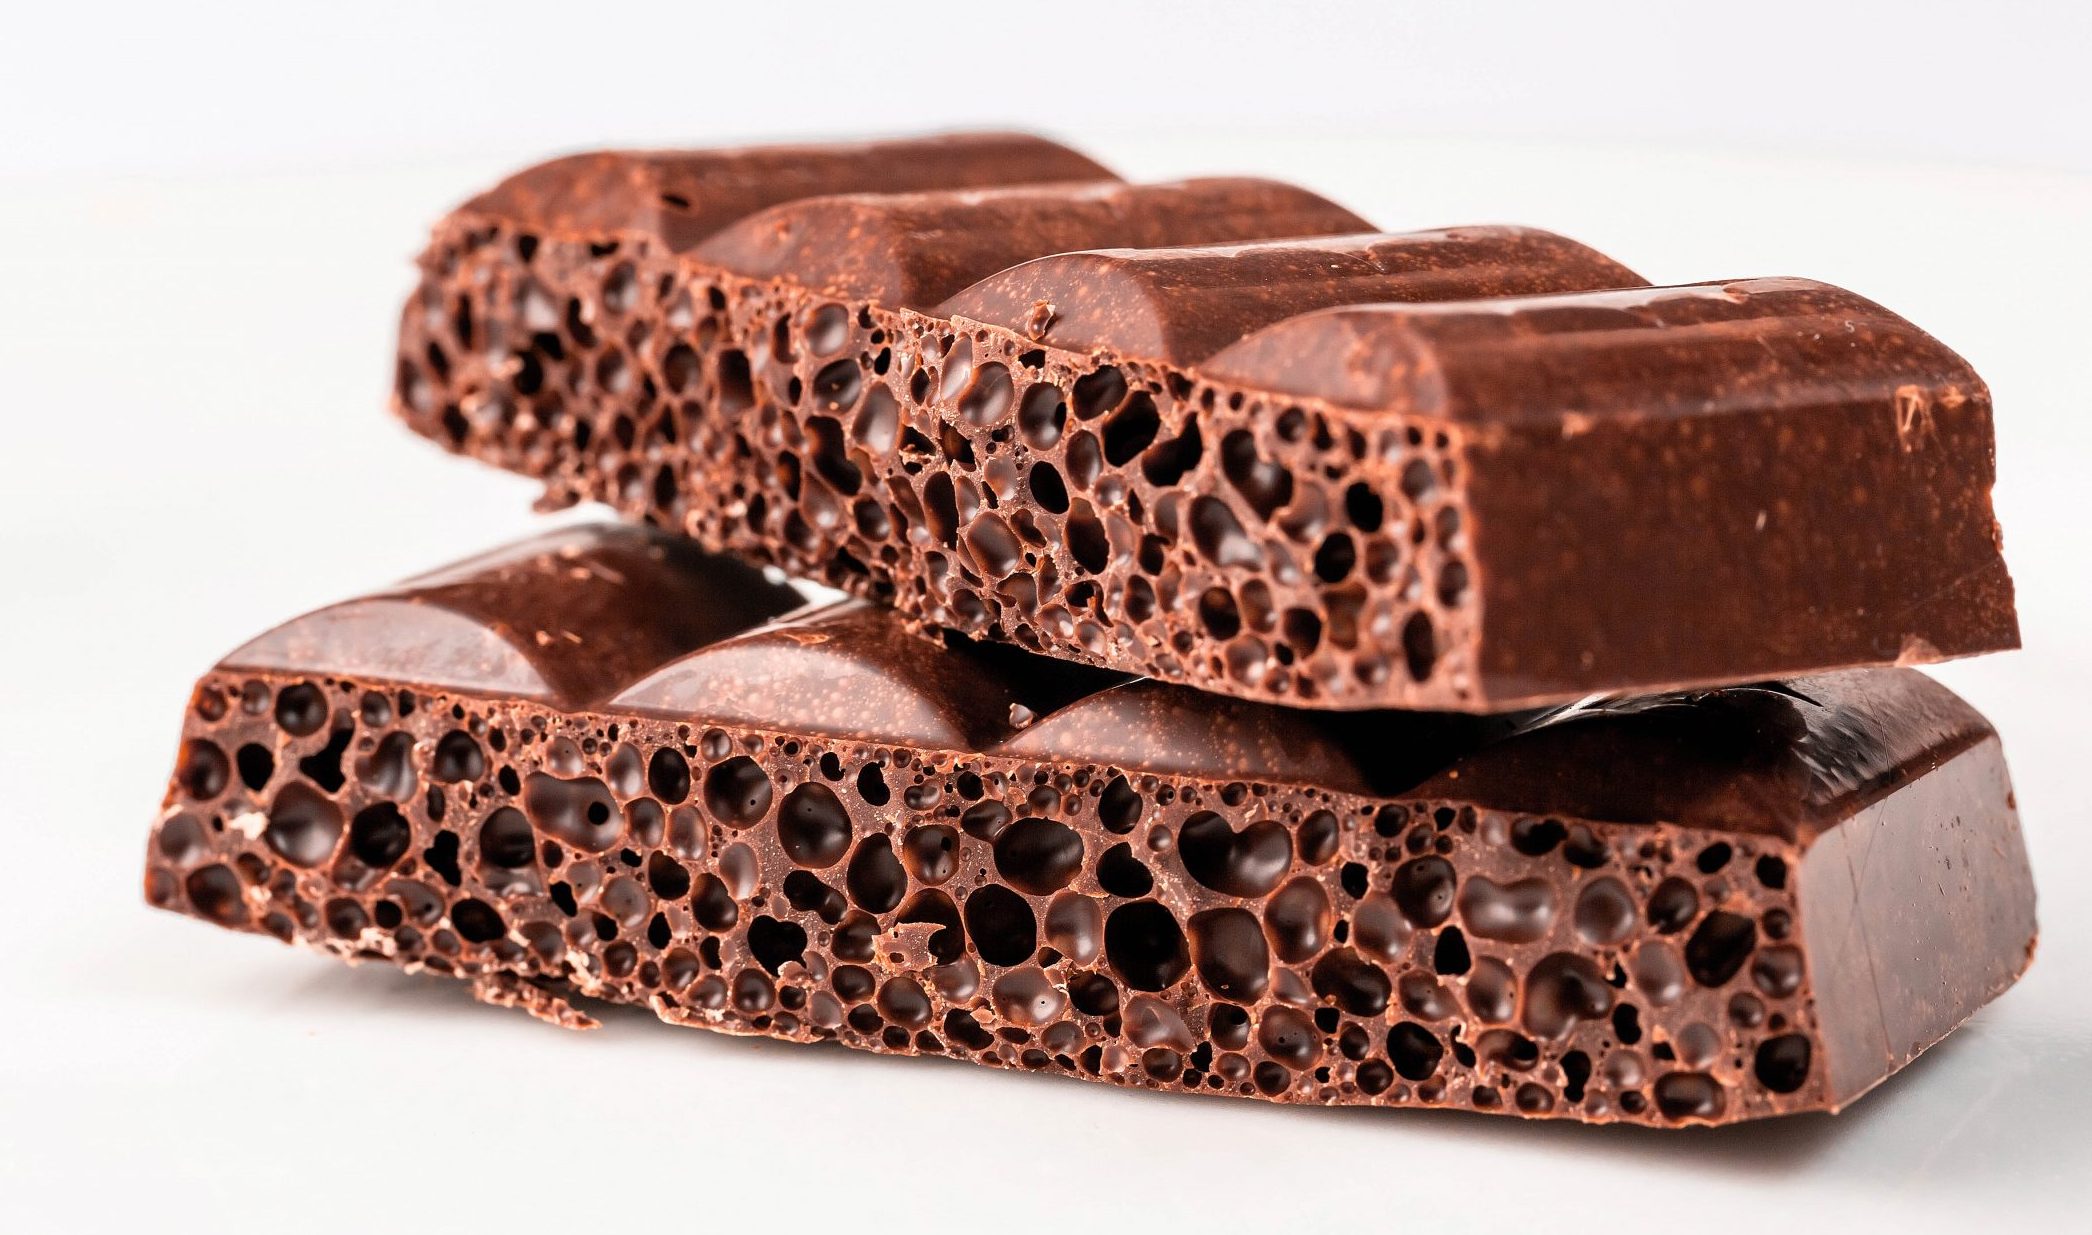 slices of porous chocolate